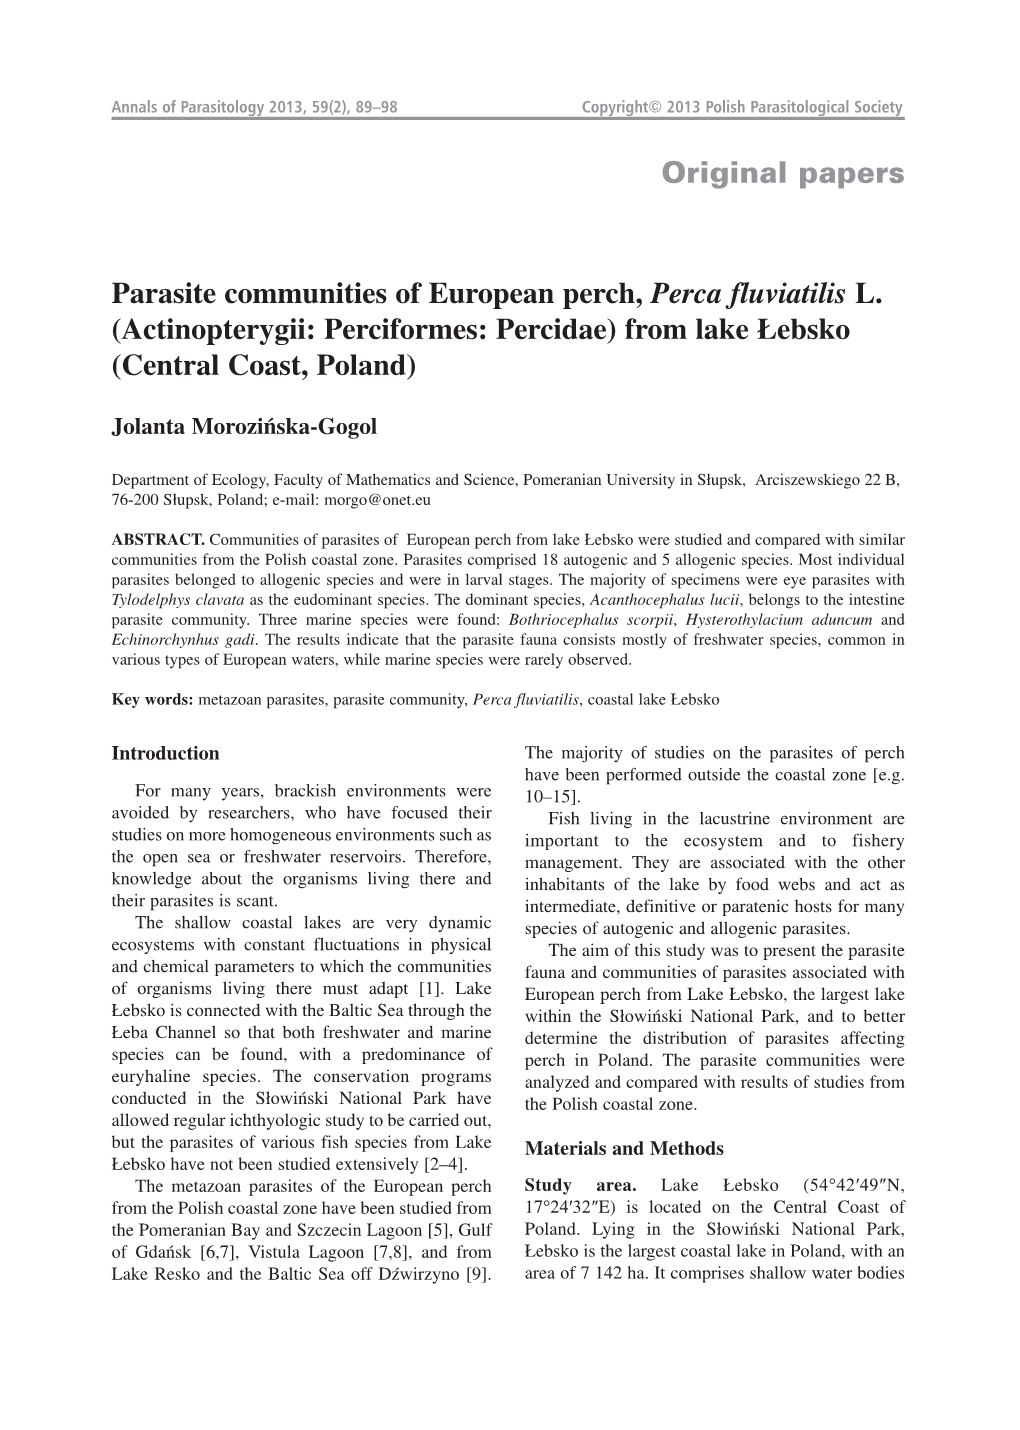 Original Papers Parasite Communities of European Perch, Perca Fluviatilis L